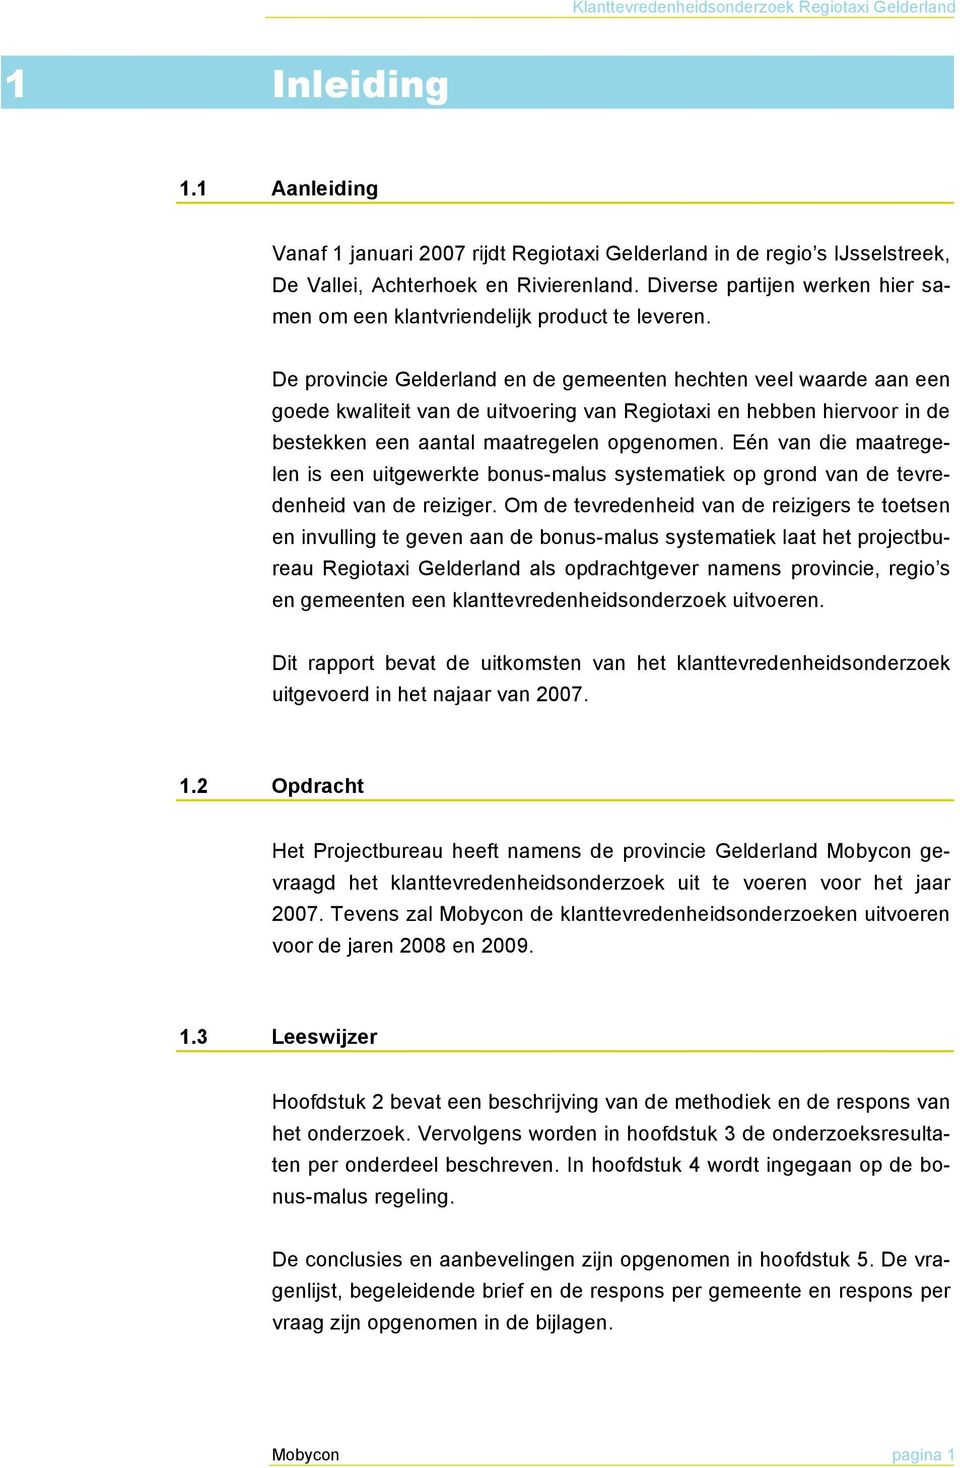 De provincie Gelderland en de gemeenten hechten veel waarde aan een goede kwaliteit van de uitvoering van Regiotaxi en hebben hiervoor in de bestekken een aantal maatregelen opgenomen.